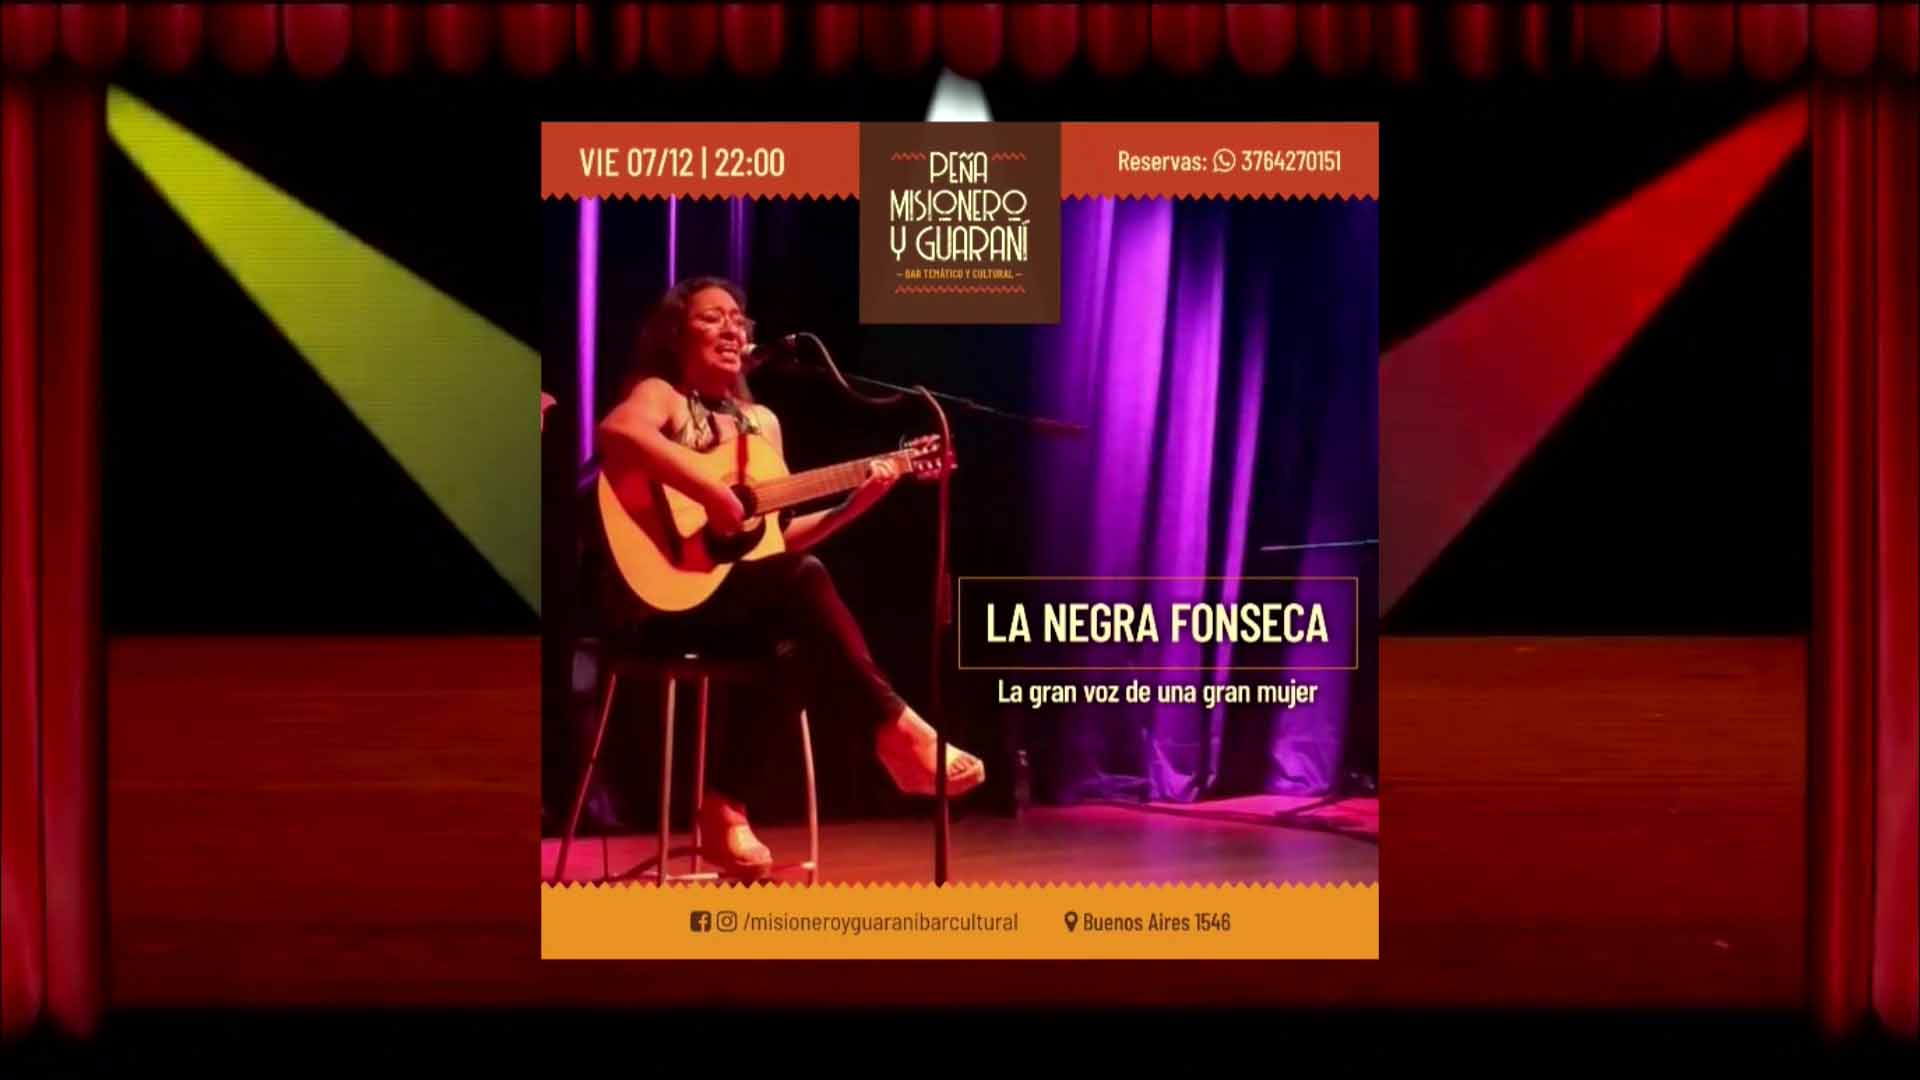 GuÍa de shows: “Fiesta de la Navidad, Patricia Sosa y la Negra Fonseca”